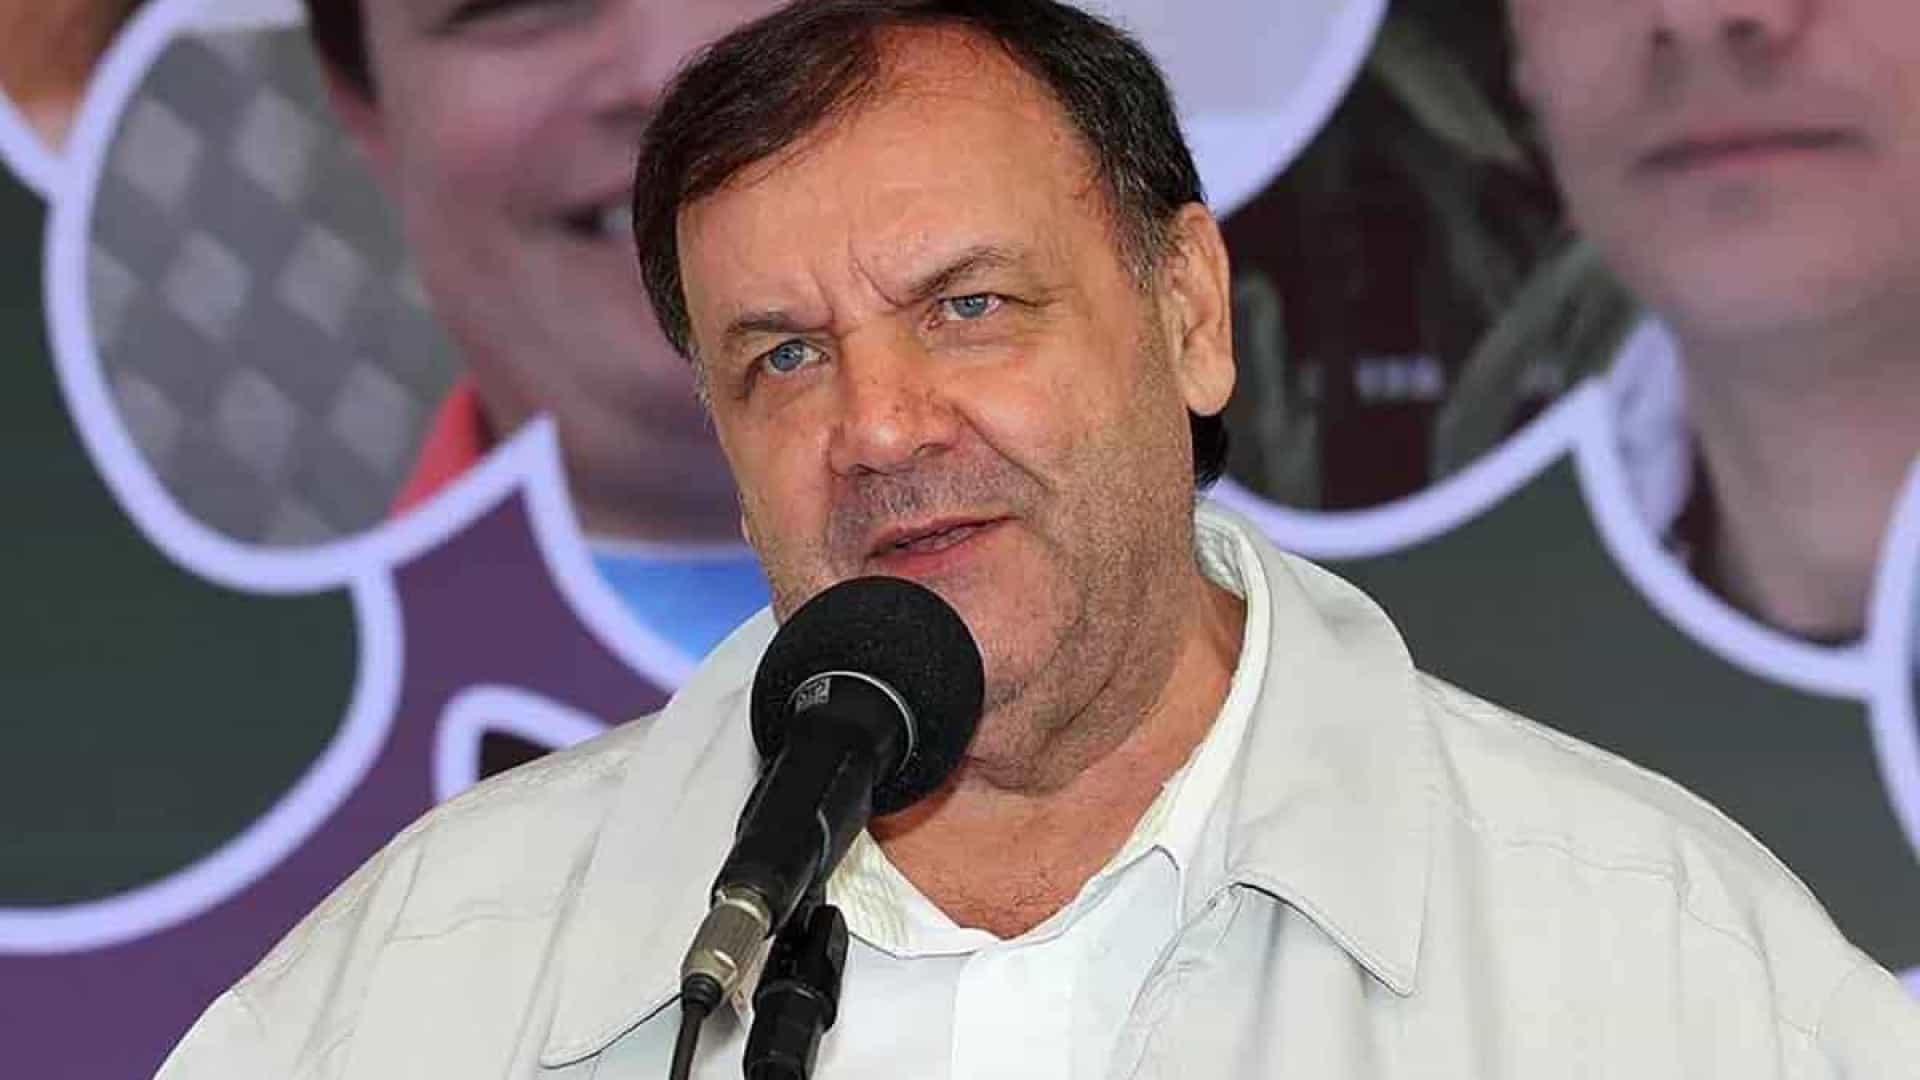 Morre Padre Tico lder de movimentos sociais na zona leste de SP